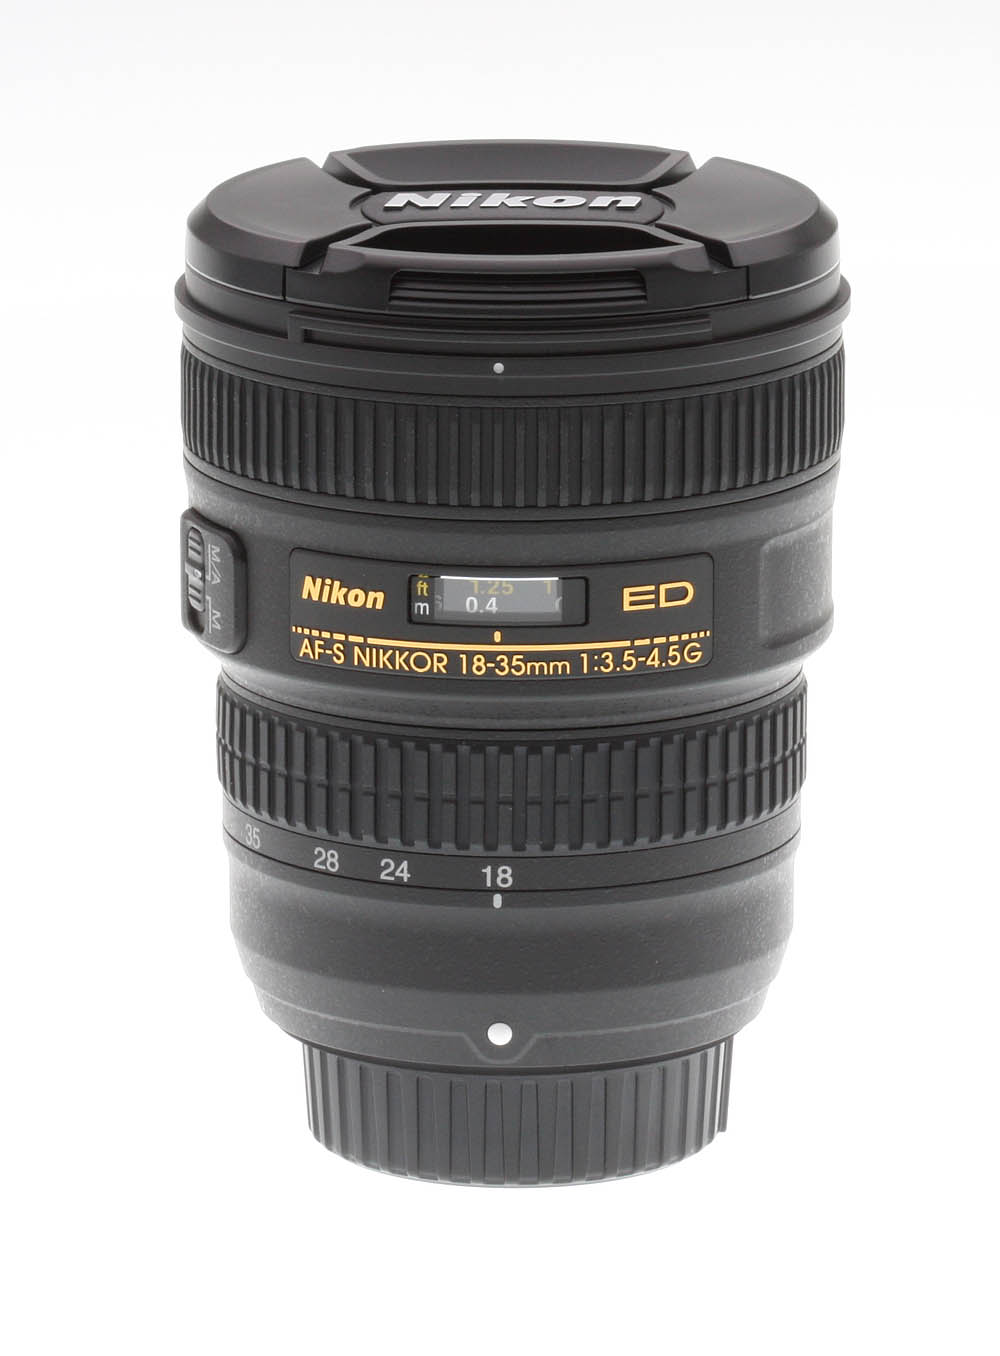 Nikon 18-35mm f/3.5-4.5G ED AF-S Nikkor Review